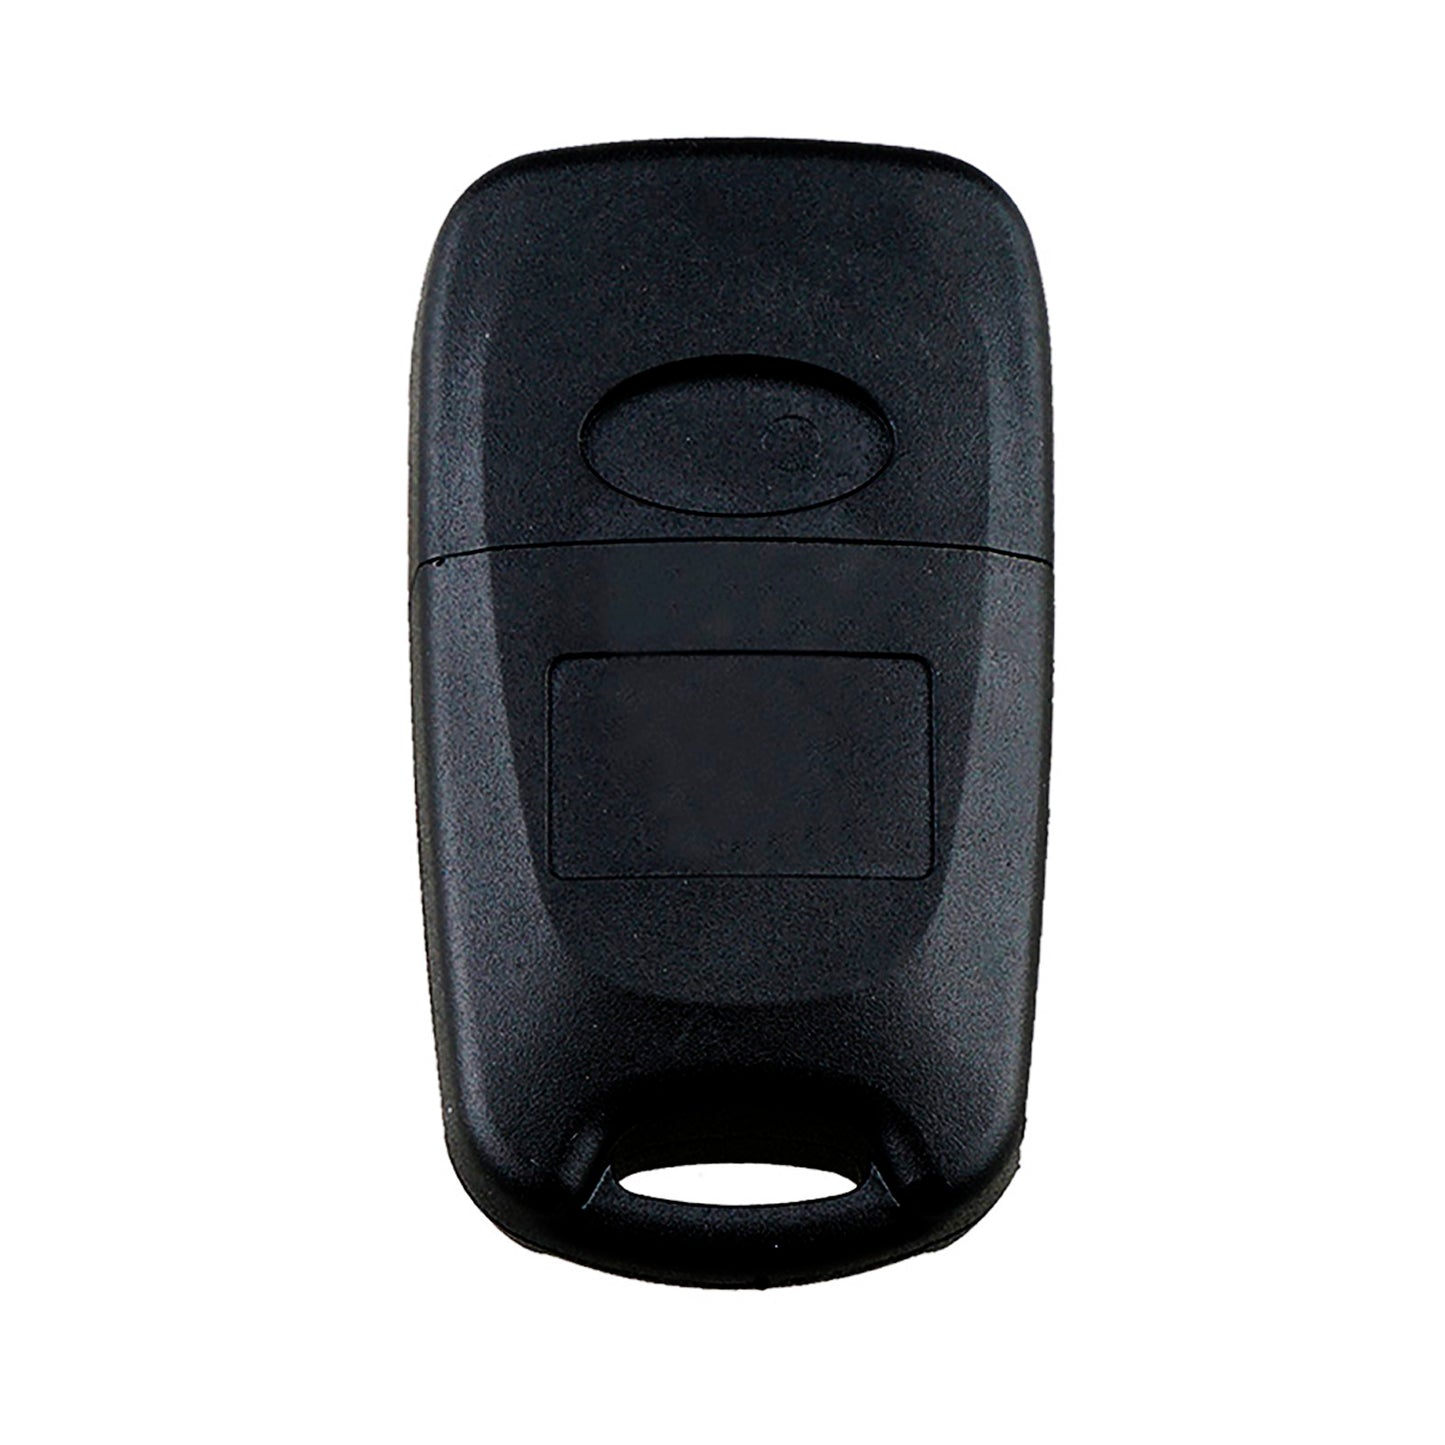 3 Buttons 315MHz Keyless Entry Fob Remote Car Key For 2010 - 2012 Kia Soul FCC ID: NY0SEKSAM11ATX(AM11MY) SKU : J903